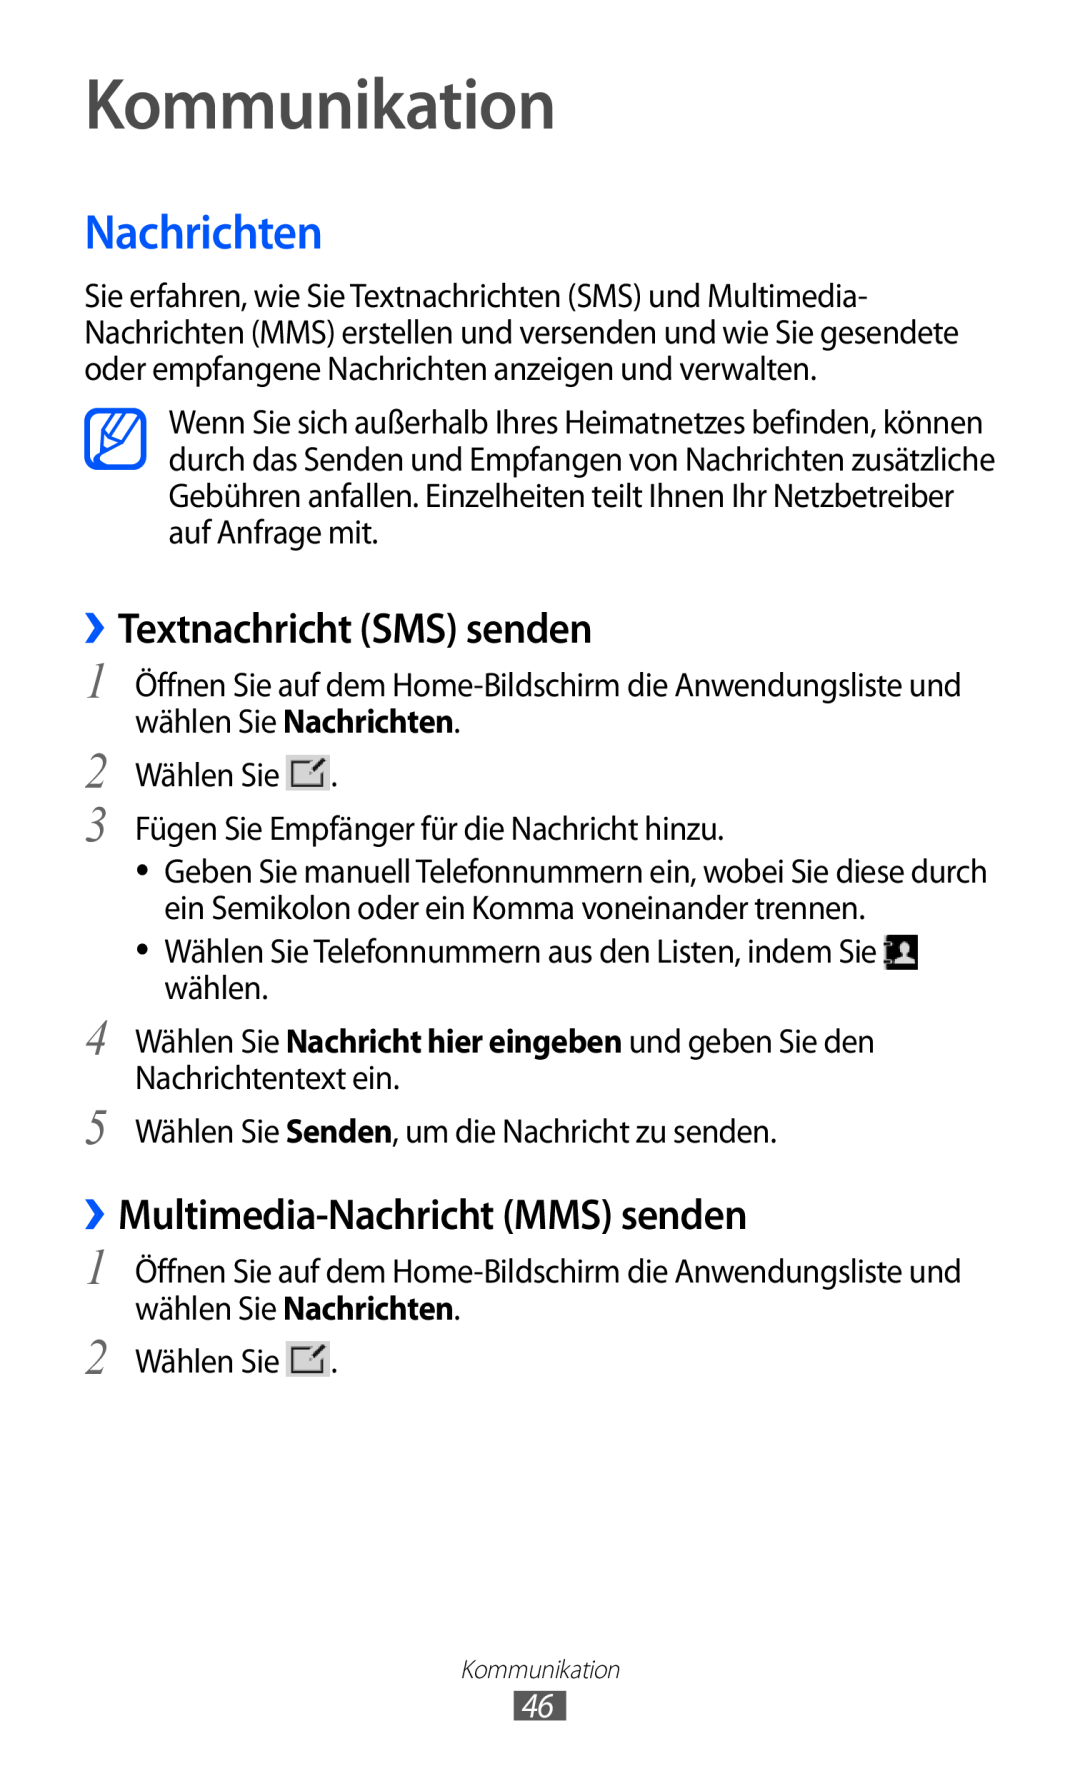 Samsung GT-P7501UWDDTM manual Kommunikation, Nachrichten, ››Textnachricht SMS senden, ››Multimedia-Nachricht MMS senden 